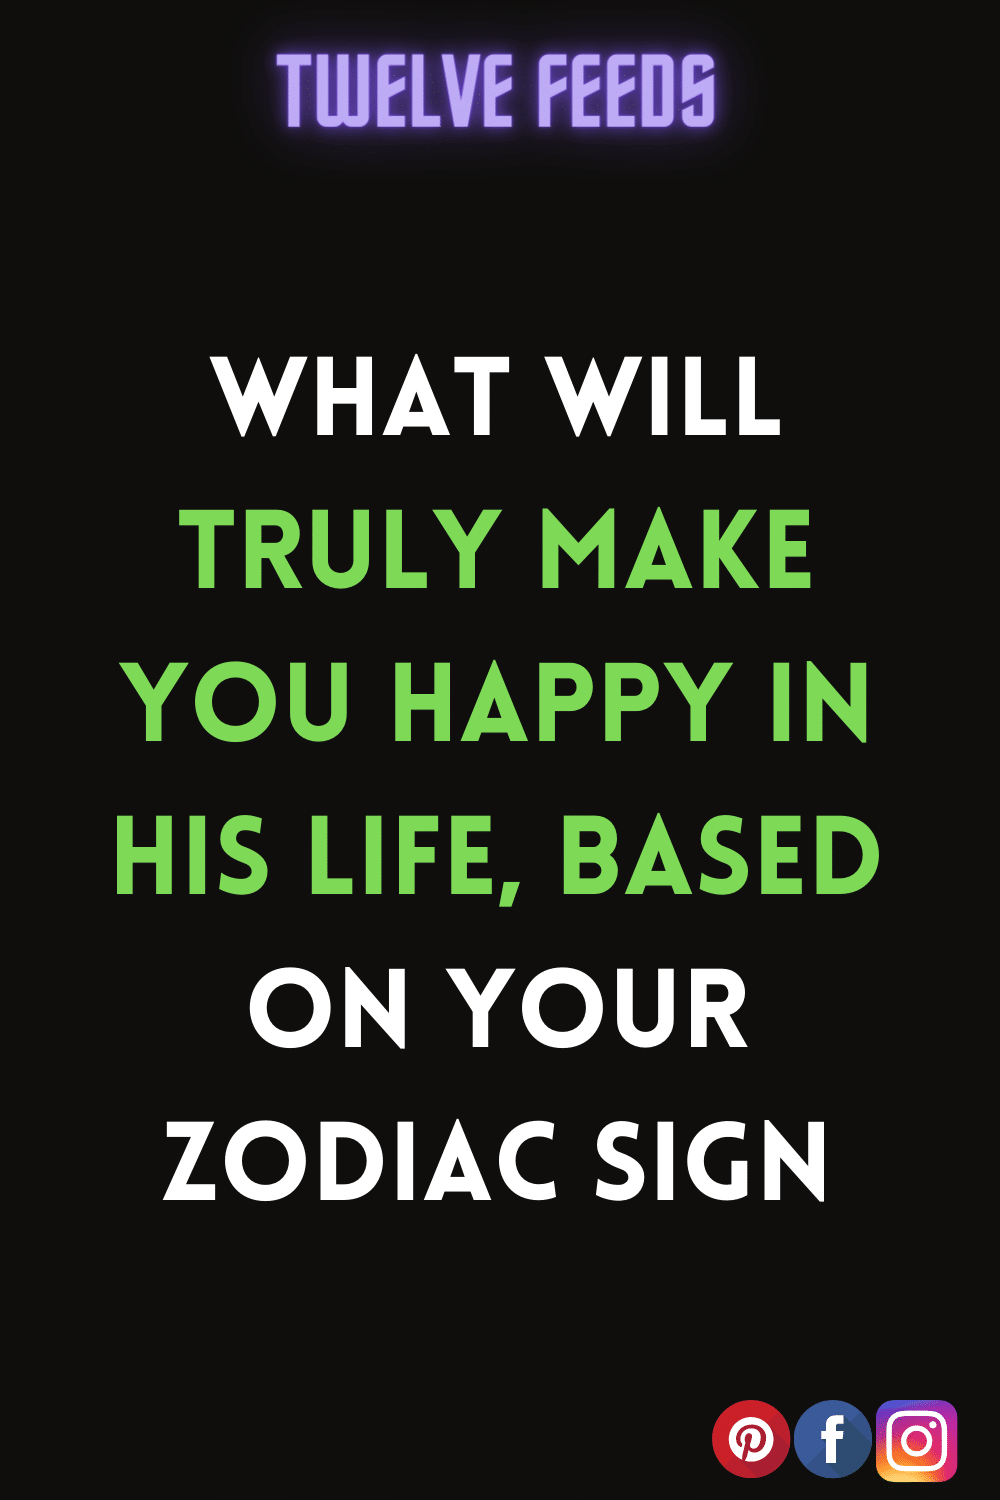  #Astrology2022 #horoscope2022 #ZodiacSigns2022 #zodiac #astrology #zodiacsigns #horoscope #capricorn #virgo #aries #leo #scorpio #pisces #libra #cancer #taurus #aquarius #gemini #zodiacmemes #sagittarius #horoscopes #love #zodiacsign #zodiacposts #astrologymemes #zodiacfacts #astrologyposts #tarot #zodiacs #art #zodiaco #zodiacpost #bhfyp#astrologer #astro #astrologysigns #zodiaclove